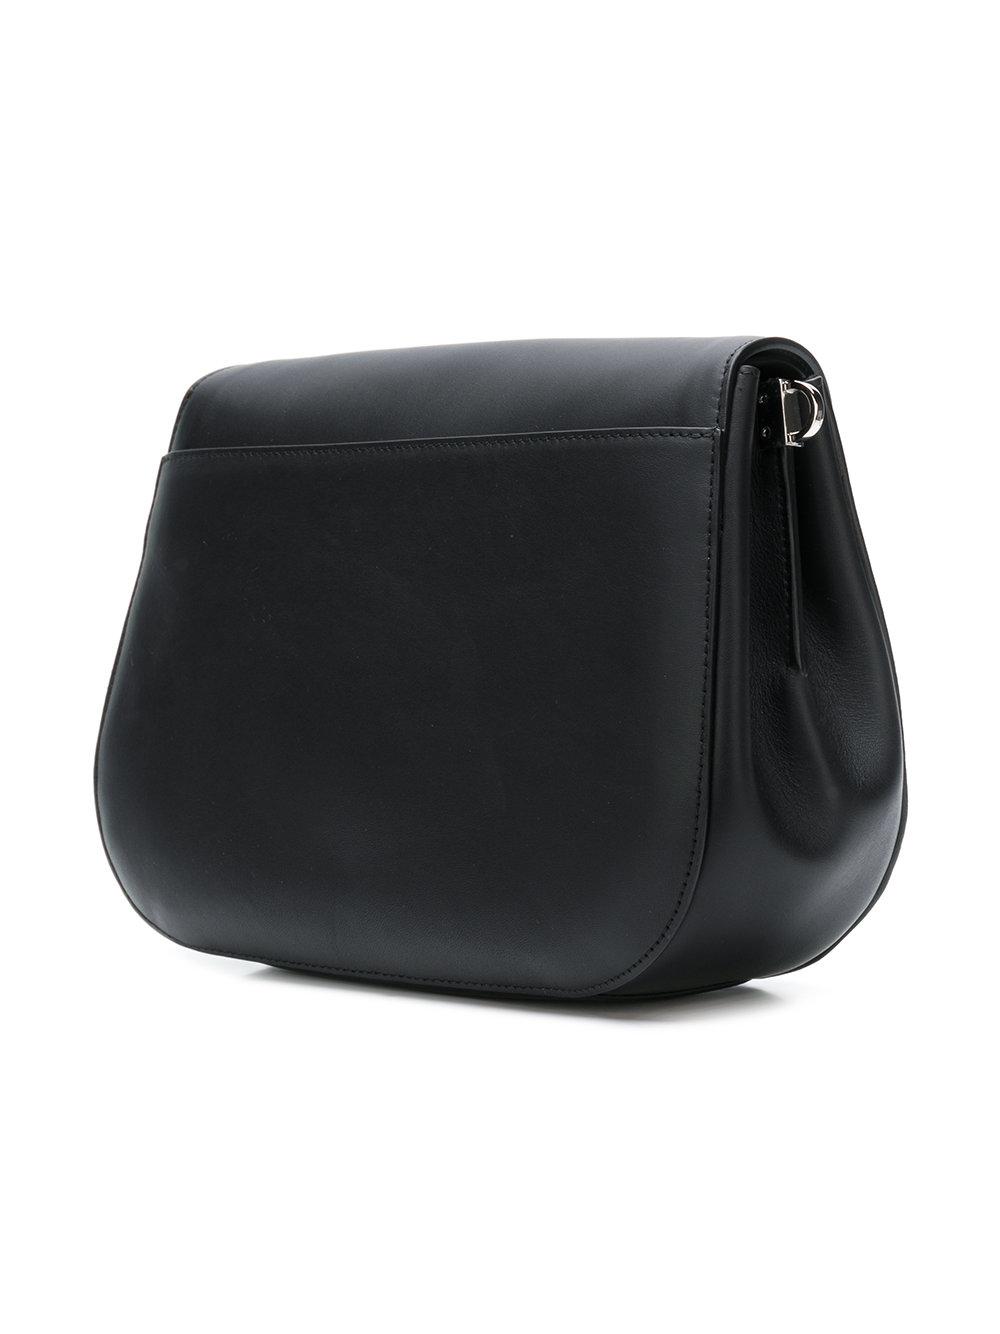 Furla Leather Margherita Shoulder Bag in Black | Lyst